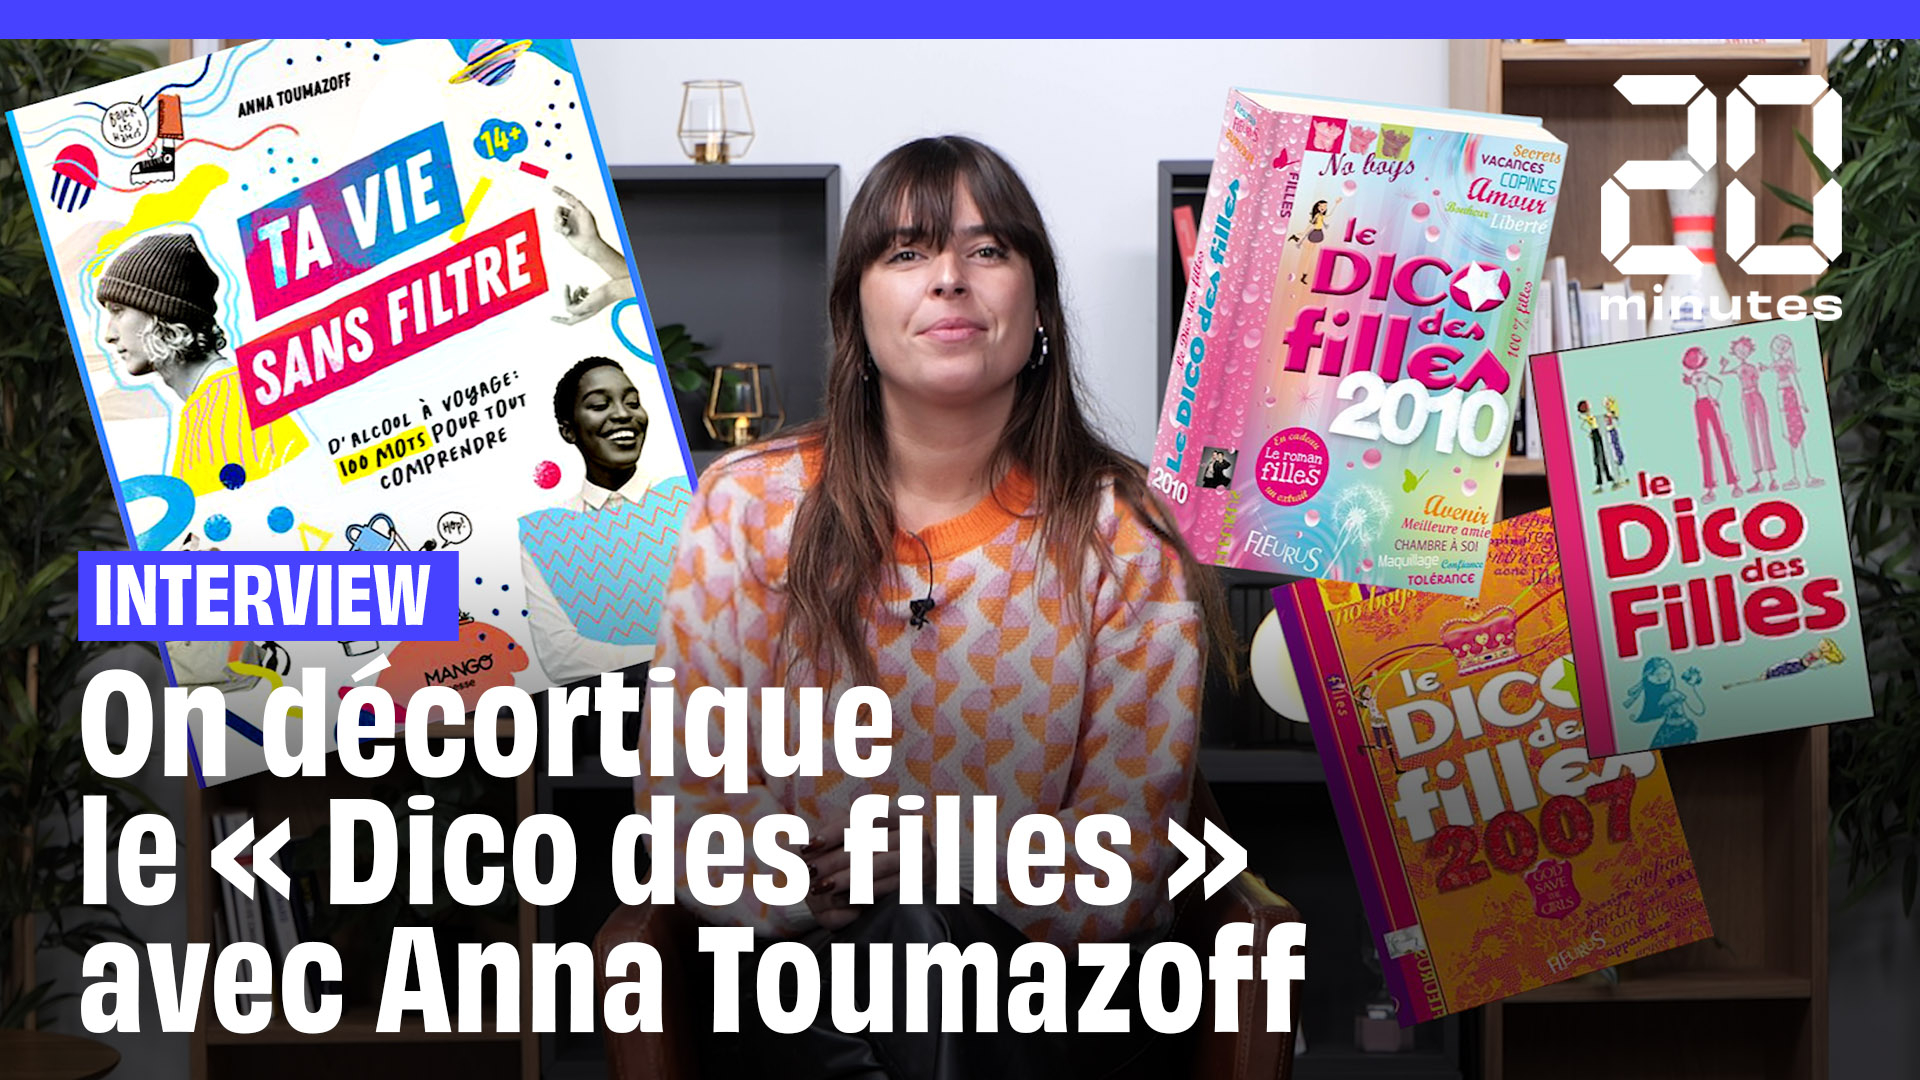 Avec « Ta vie sans filtre », Anna Toumazoff dépoussière le « Dico des Filles »